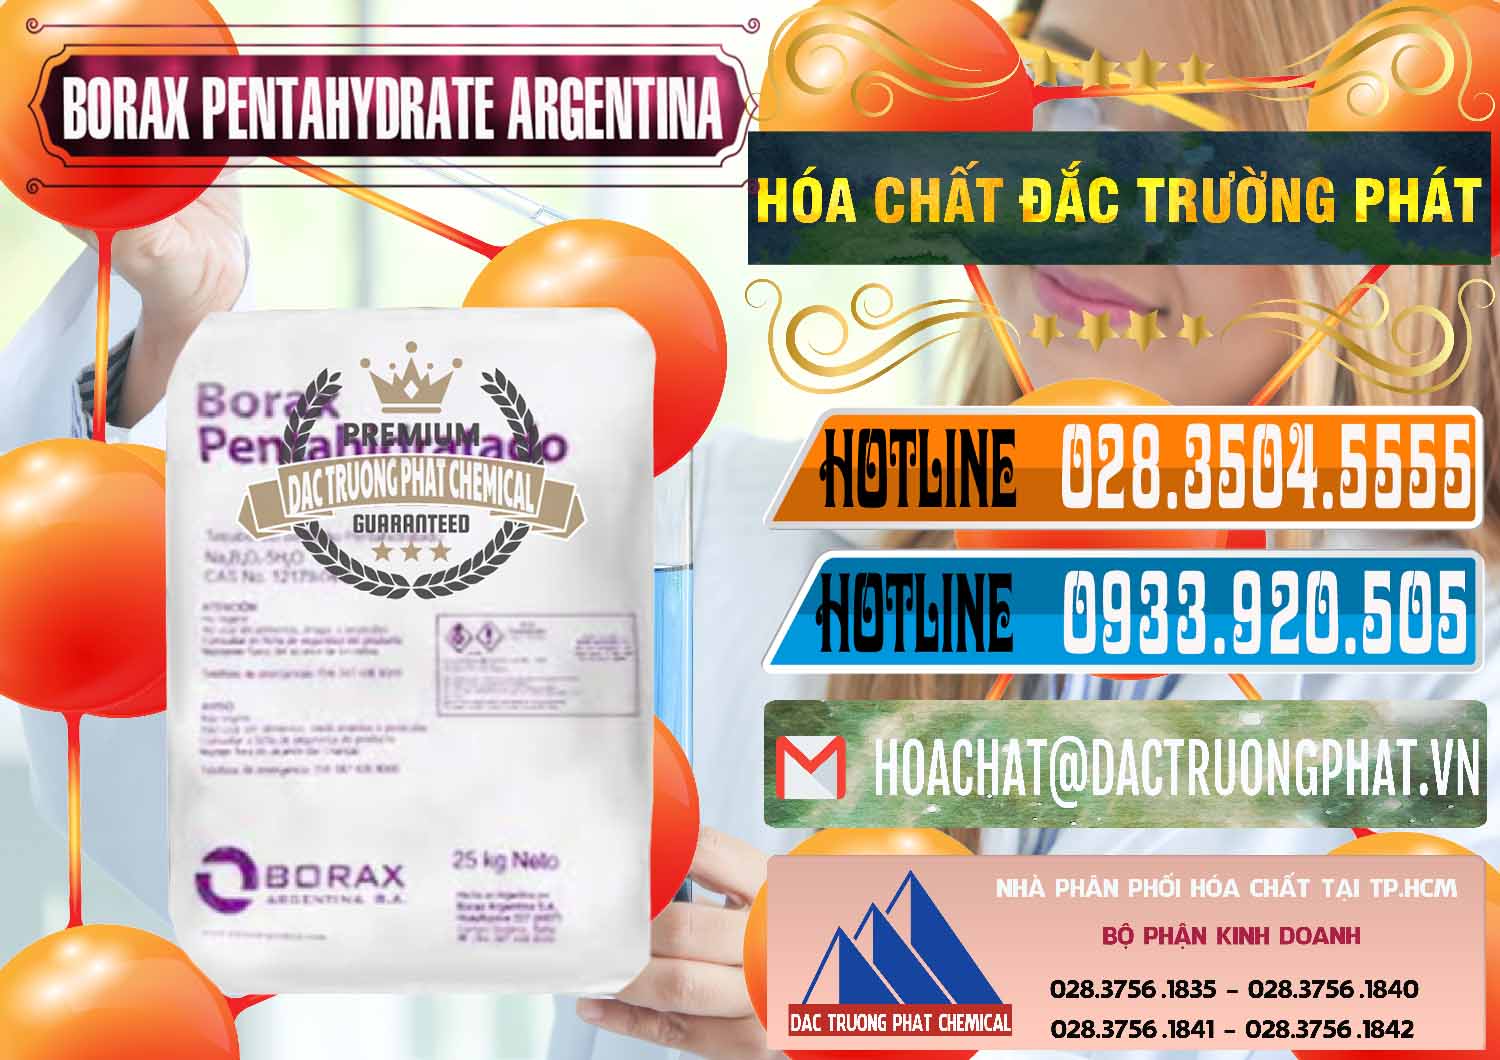 Nơi chuyên bán - cung ứng Borax Pentahydrate Argentina - 0447 - Phân phối ( cung ứng ) hóa chất tại TP.HCM - stmp.net